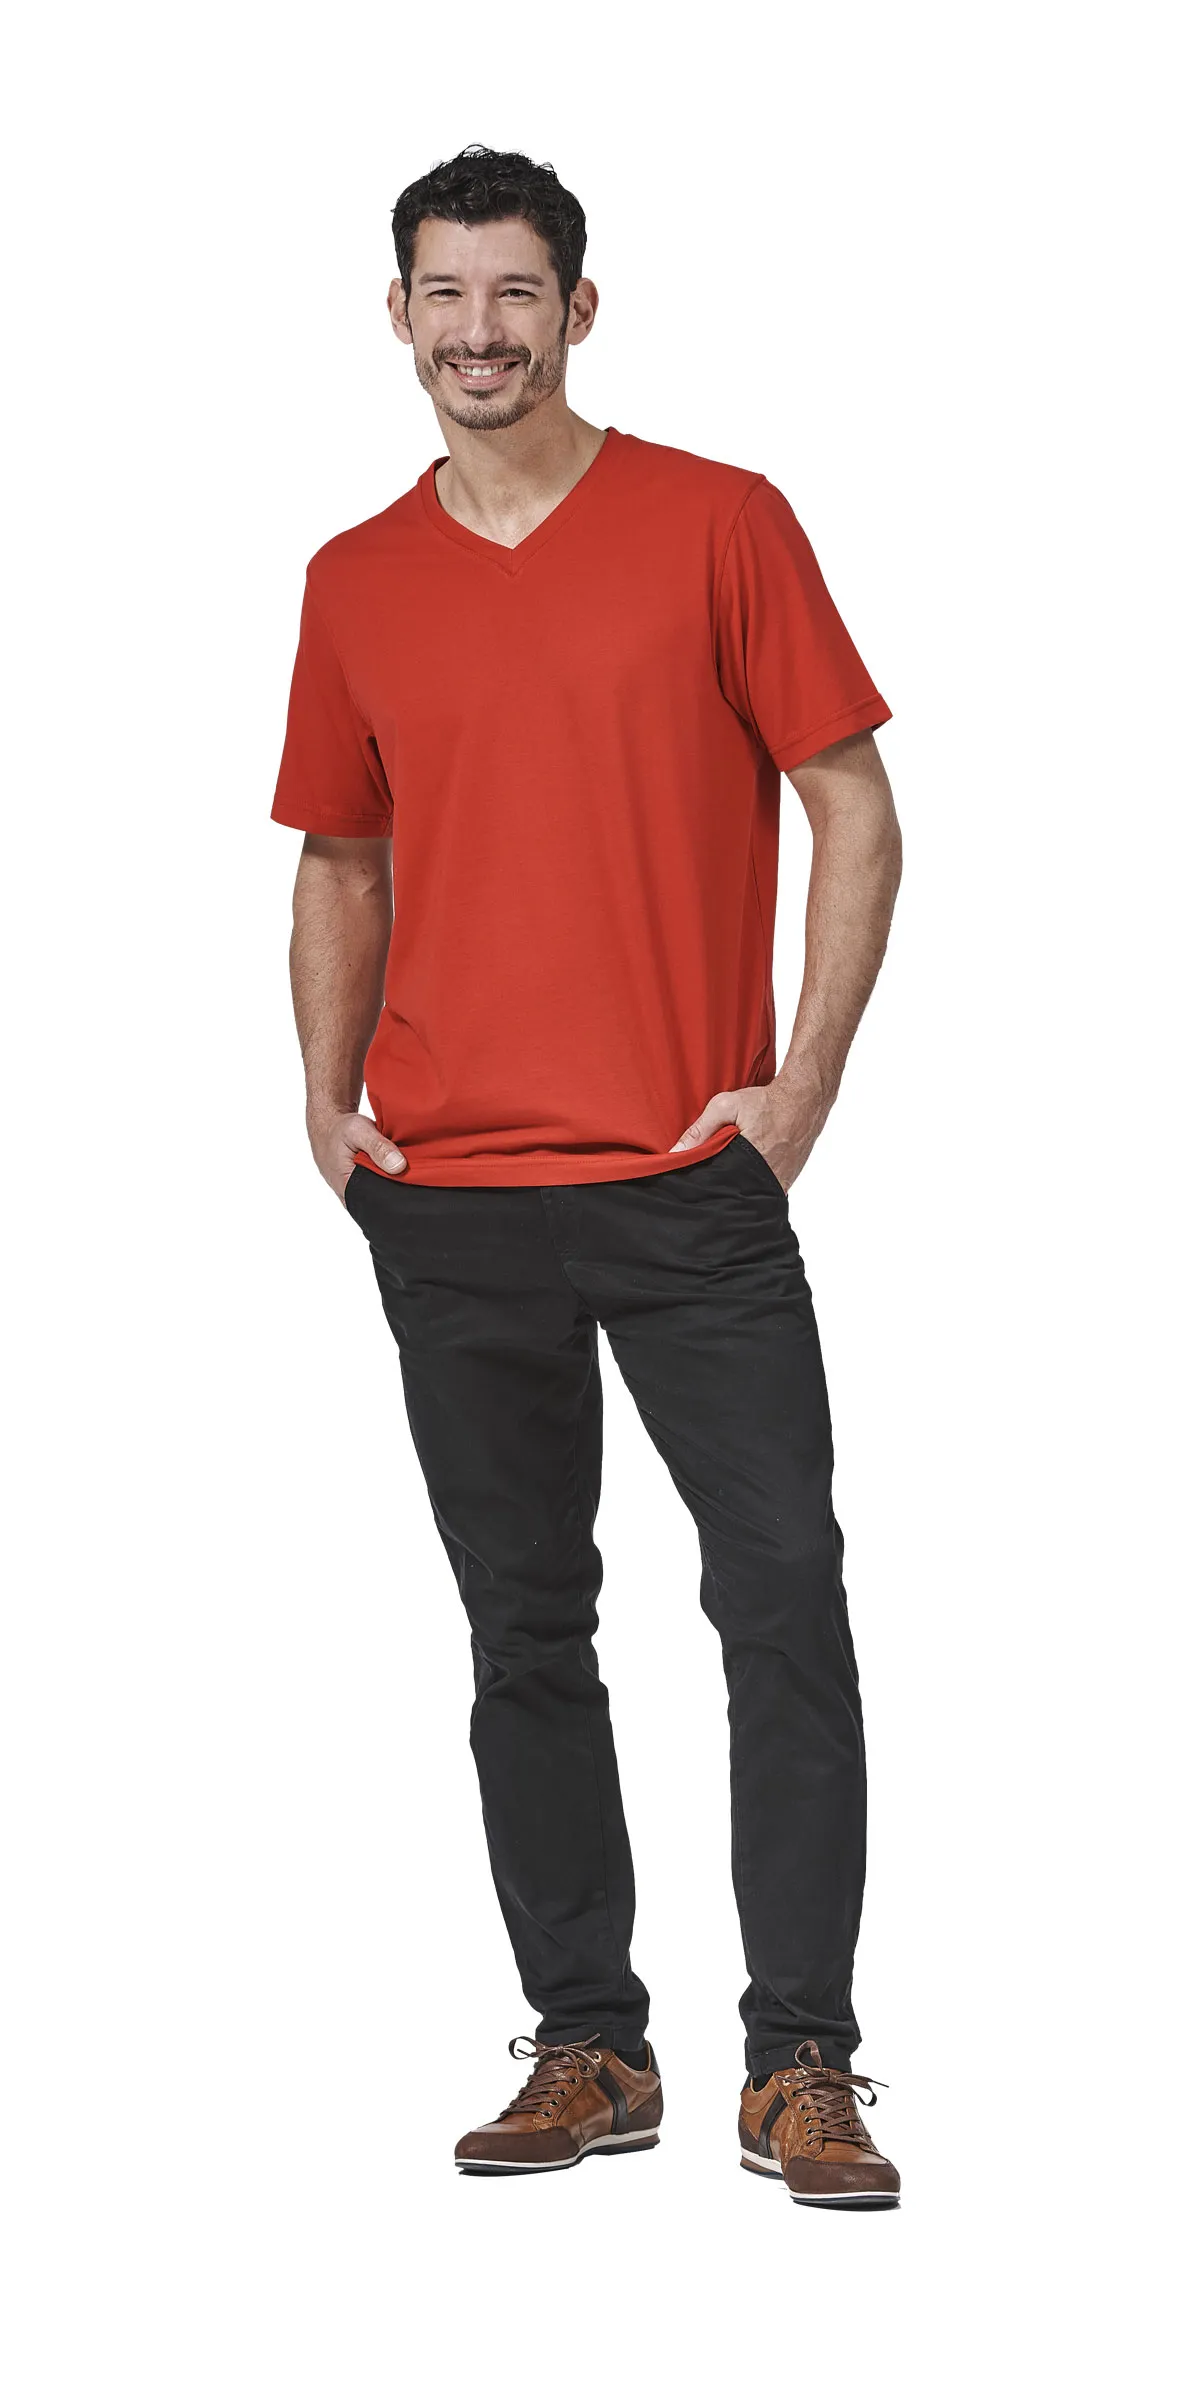 T-Shirt V-Ausschnitt FaPak 1450, Unisex, Mischgewebe, 6 Farben